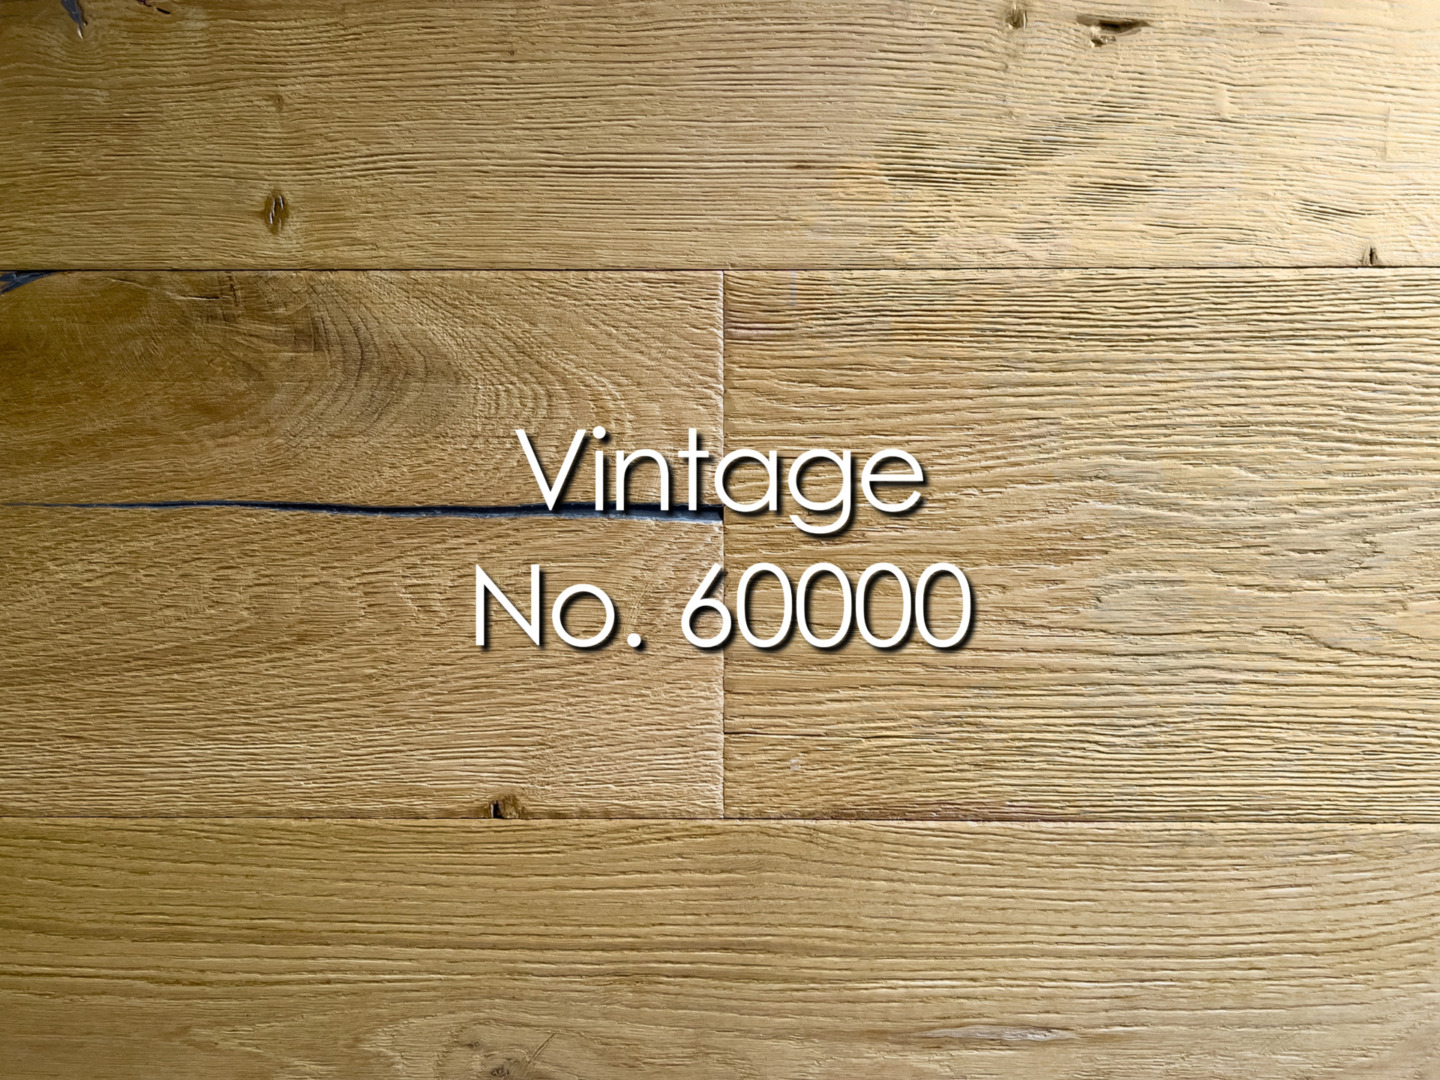 Vintage, No. 60000